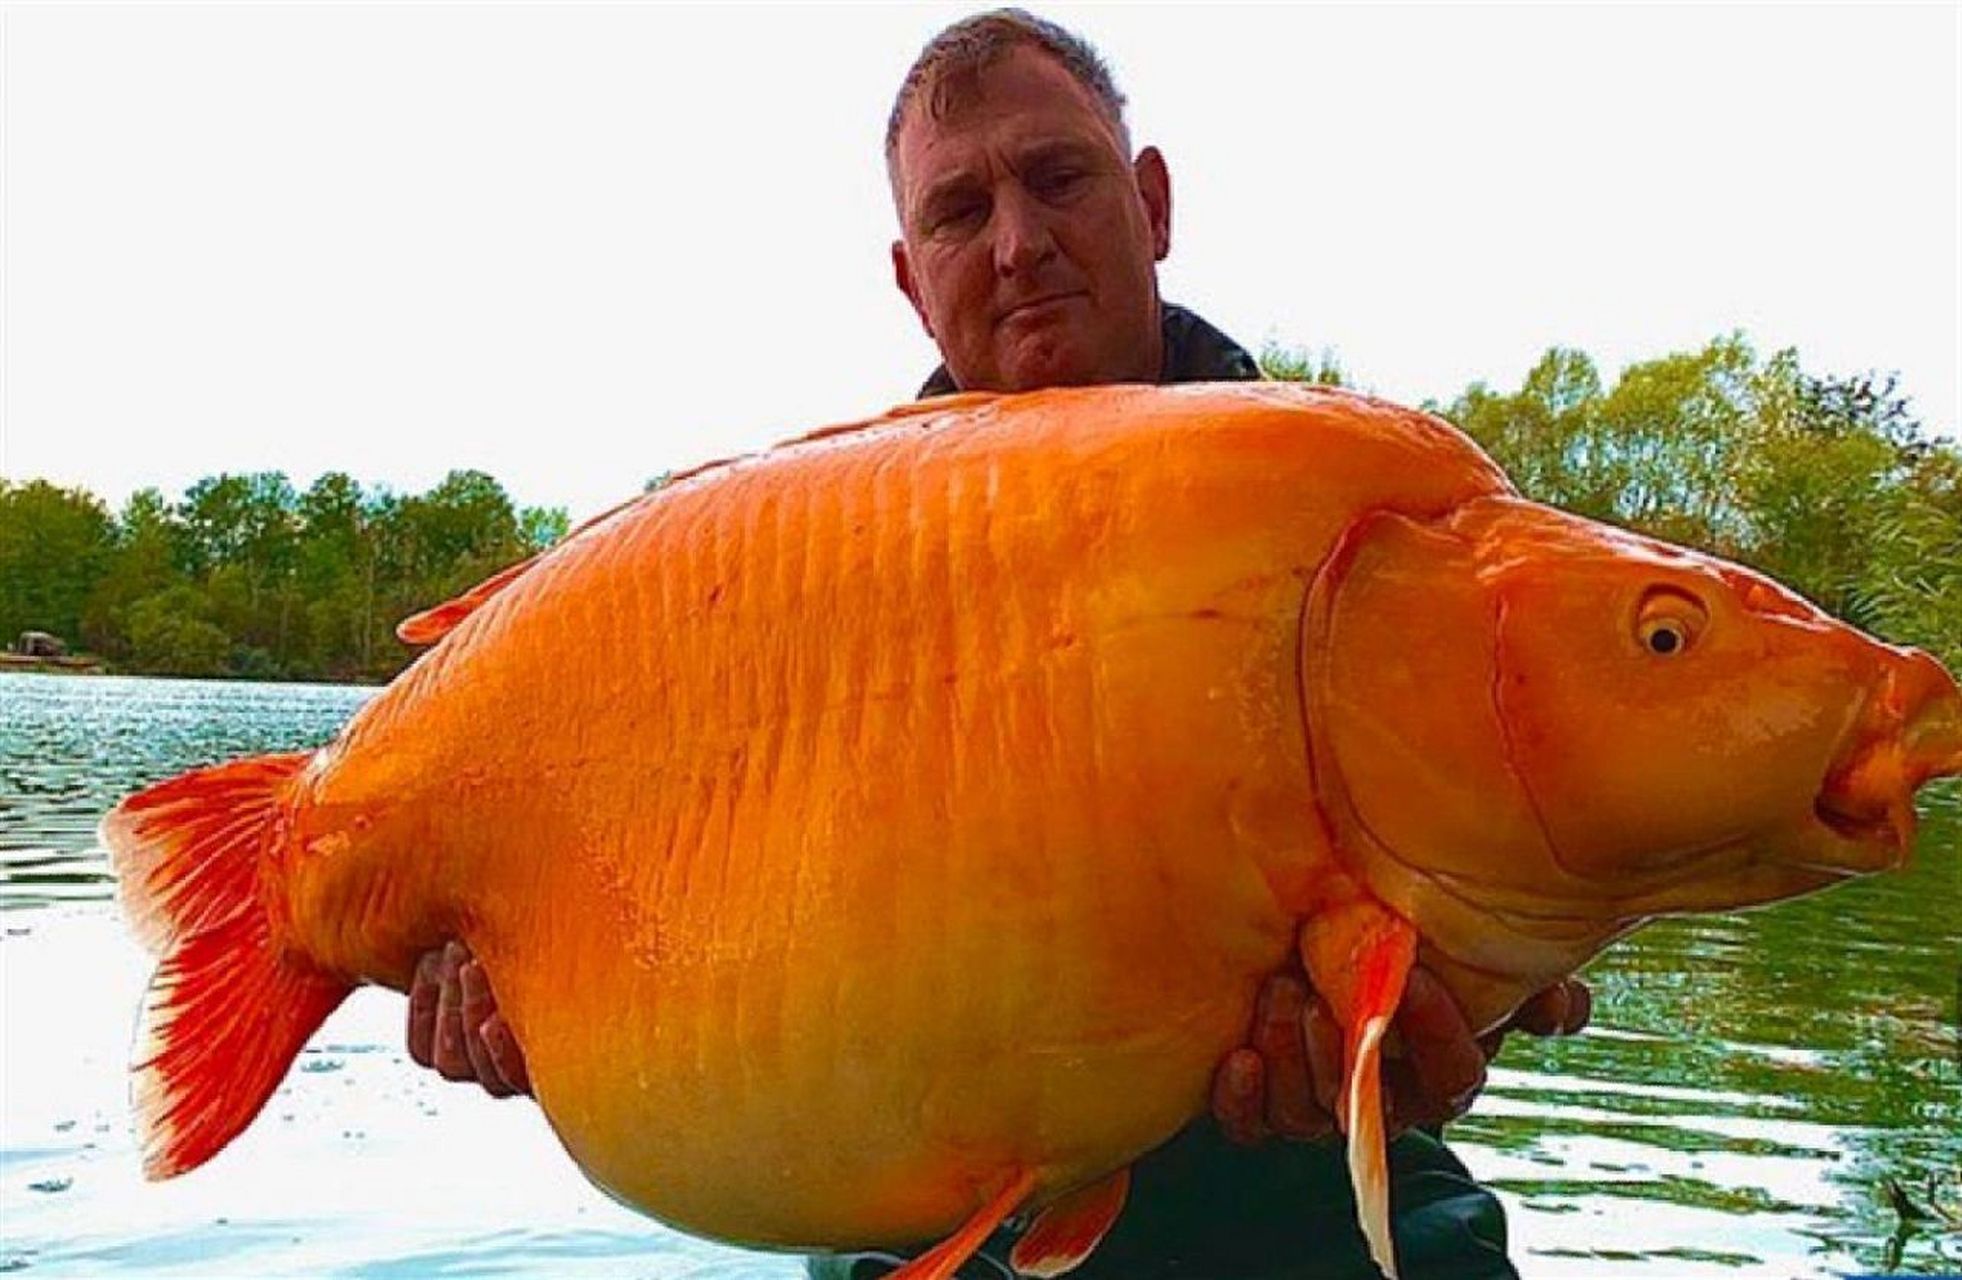 世界上最大的金鱼胡萝卜出水,重约61斤 据《每日邮报》11月21日报道